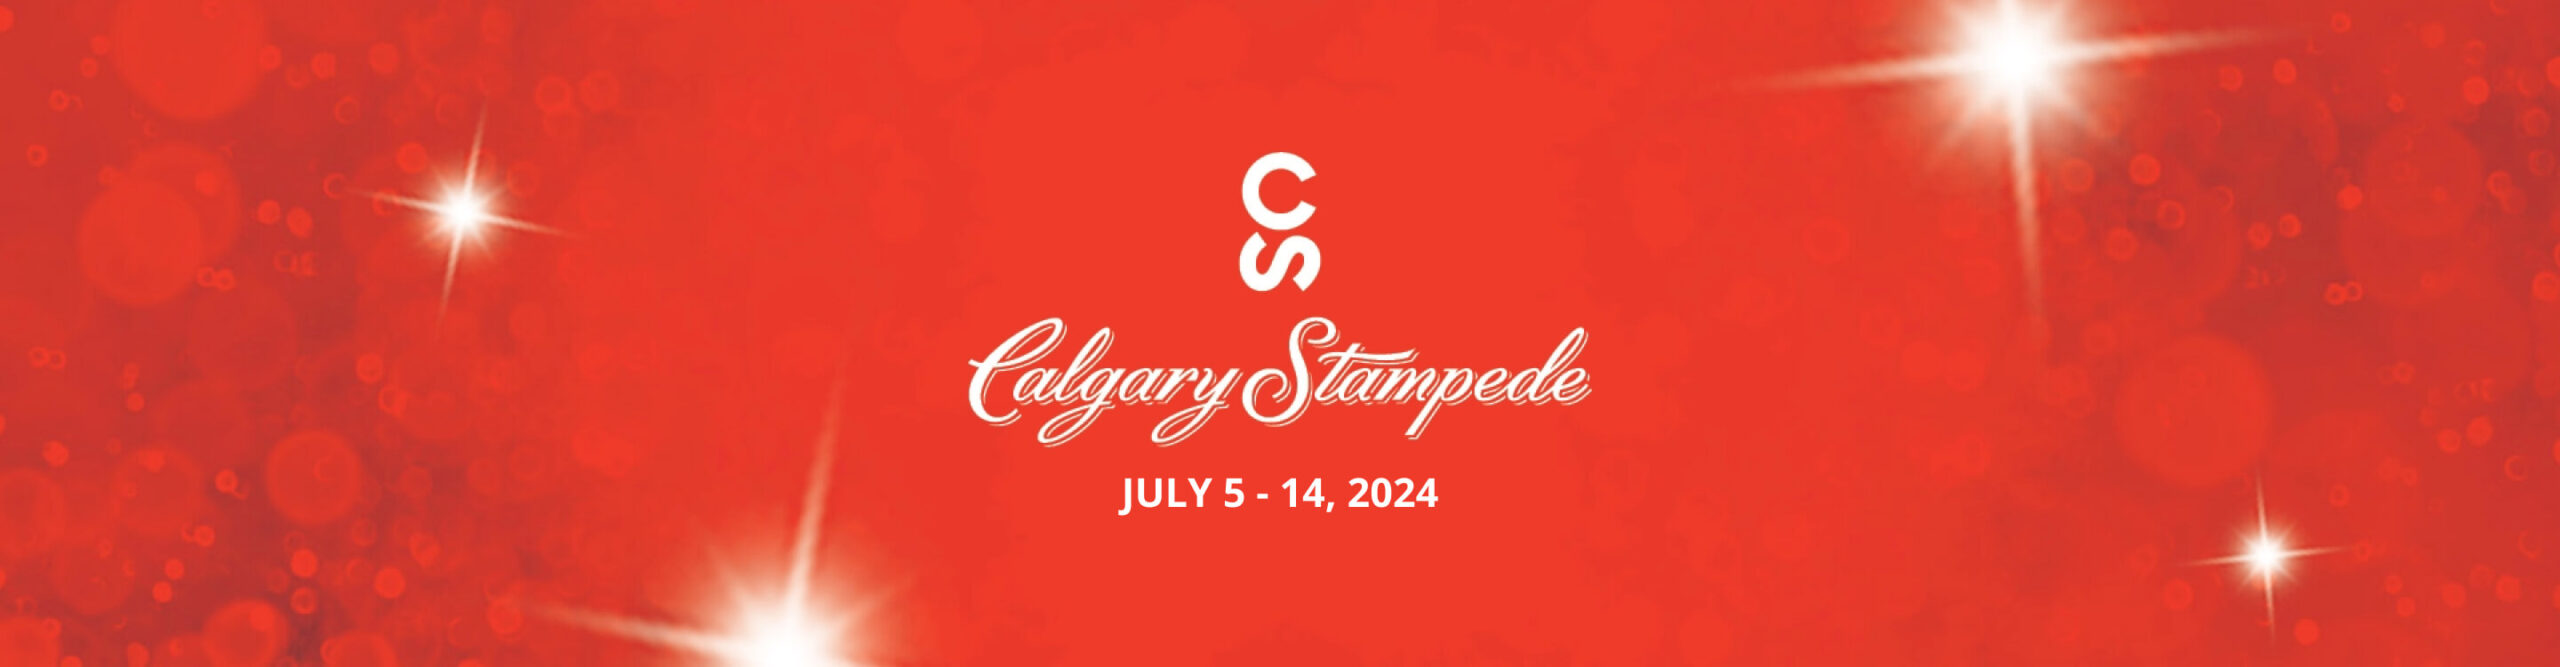 Western Canadian Calgary Stampede